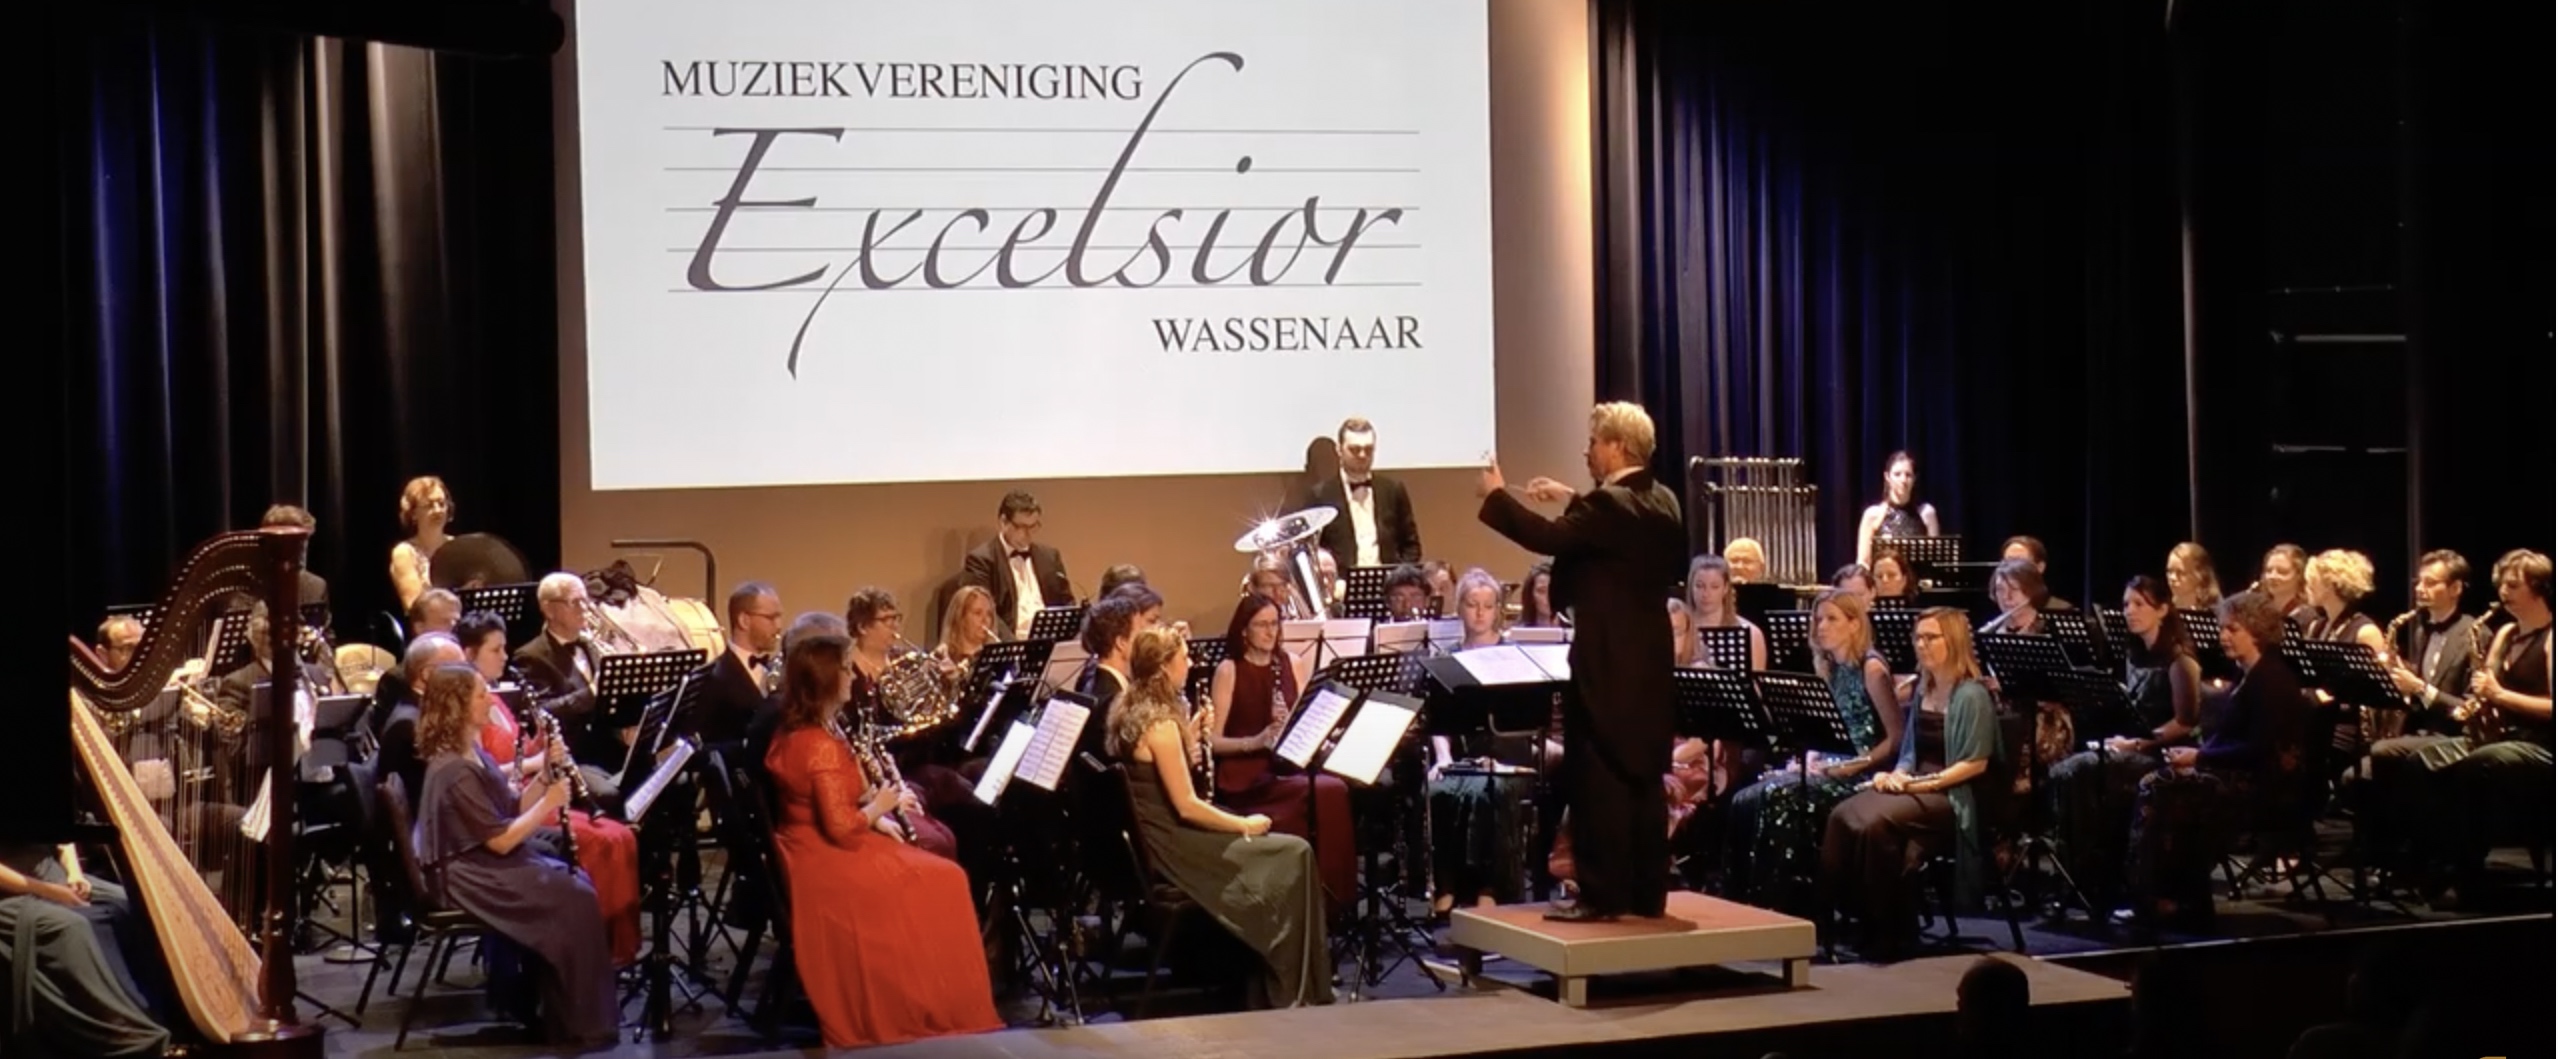 2019 Excelsior olv Geert Schrijvers